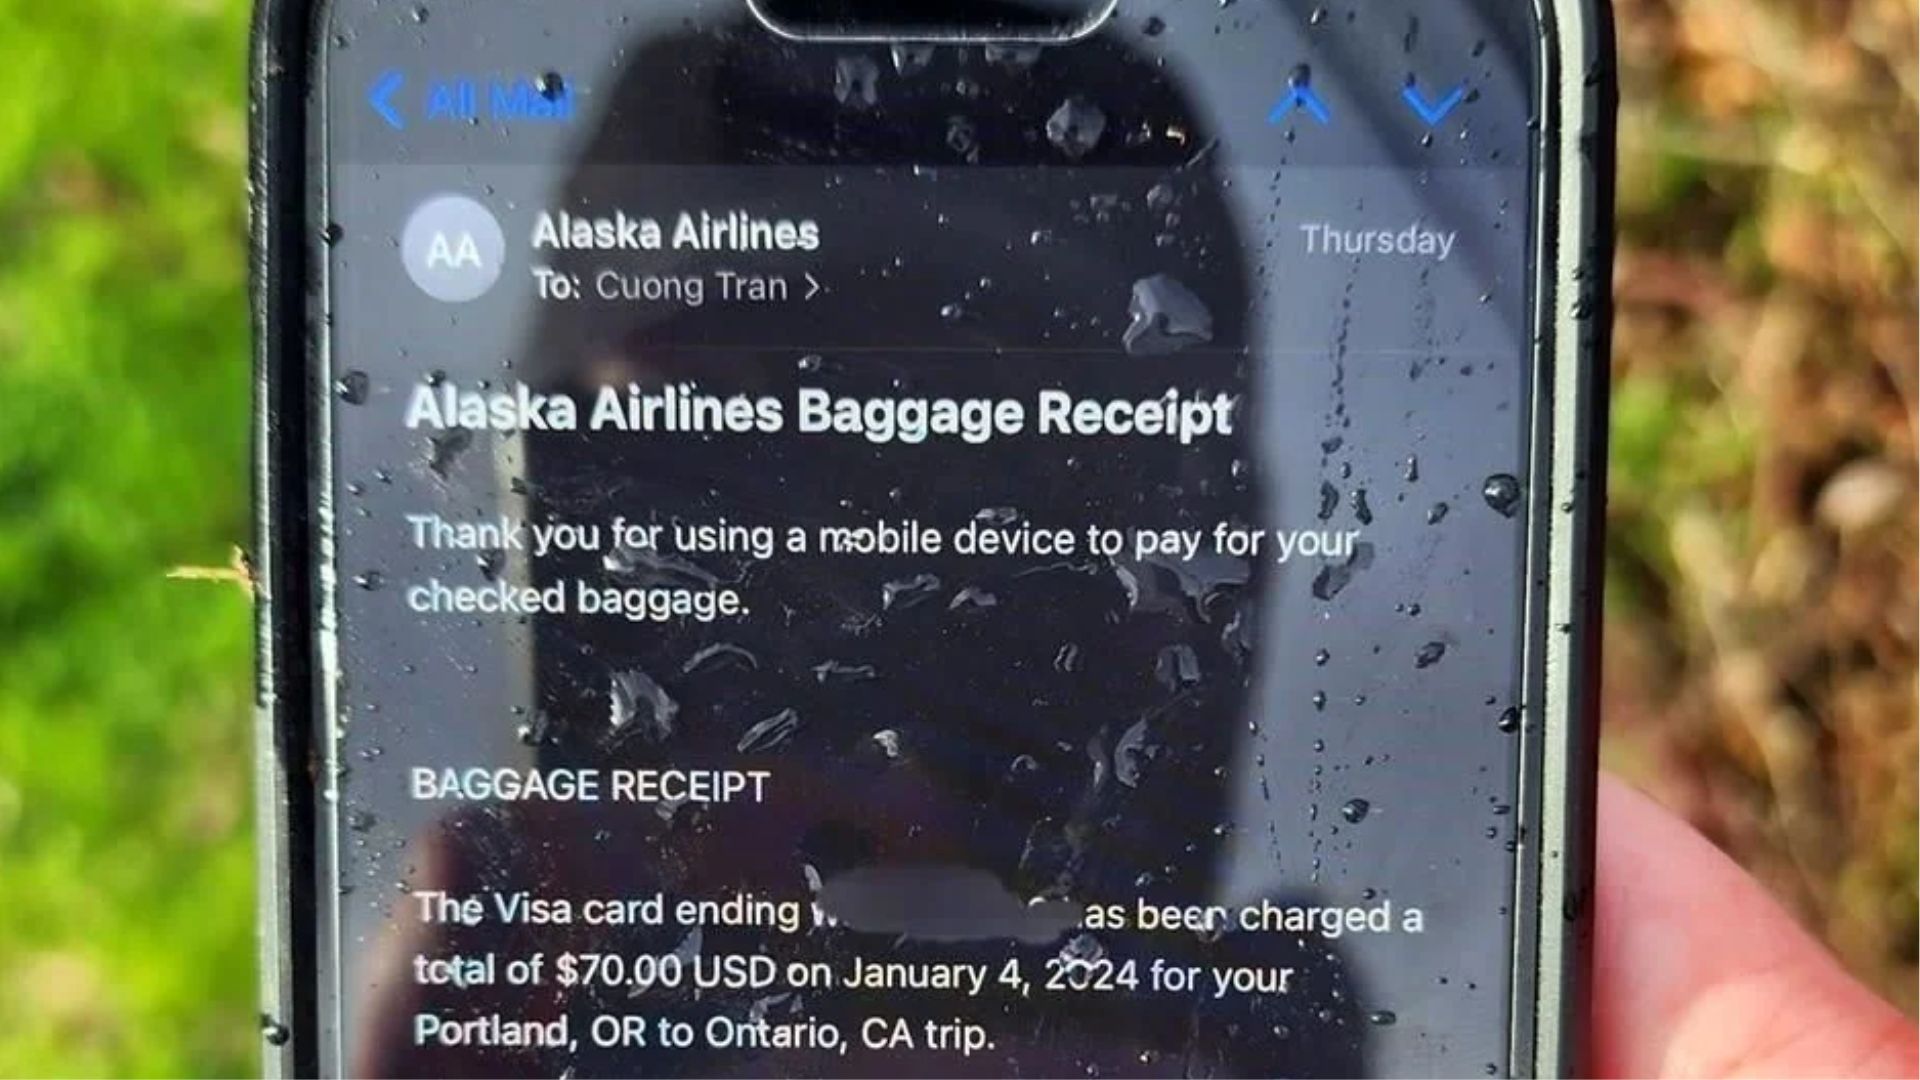 ¿Por qué sobrevivió un iPhone a caída de un avión?